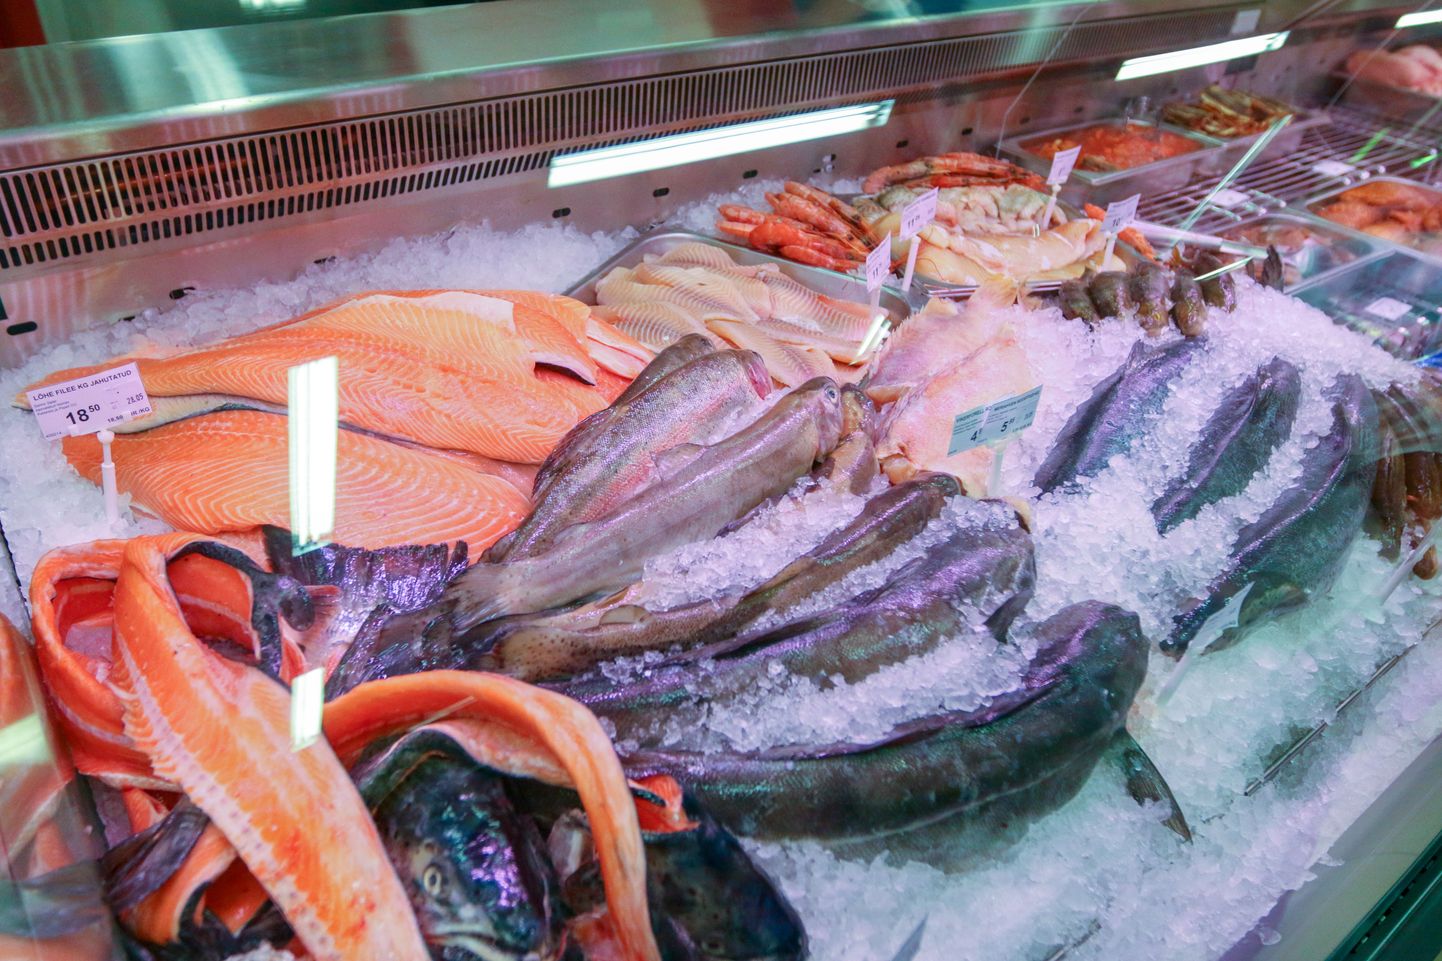 "Juba mõnda aega on olnud languses mõnede varasemate tarbijalemmikute, näiteks punase kala ostmine."